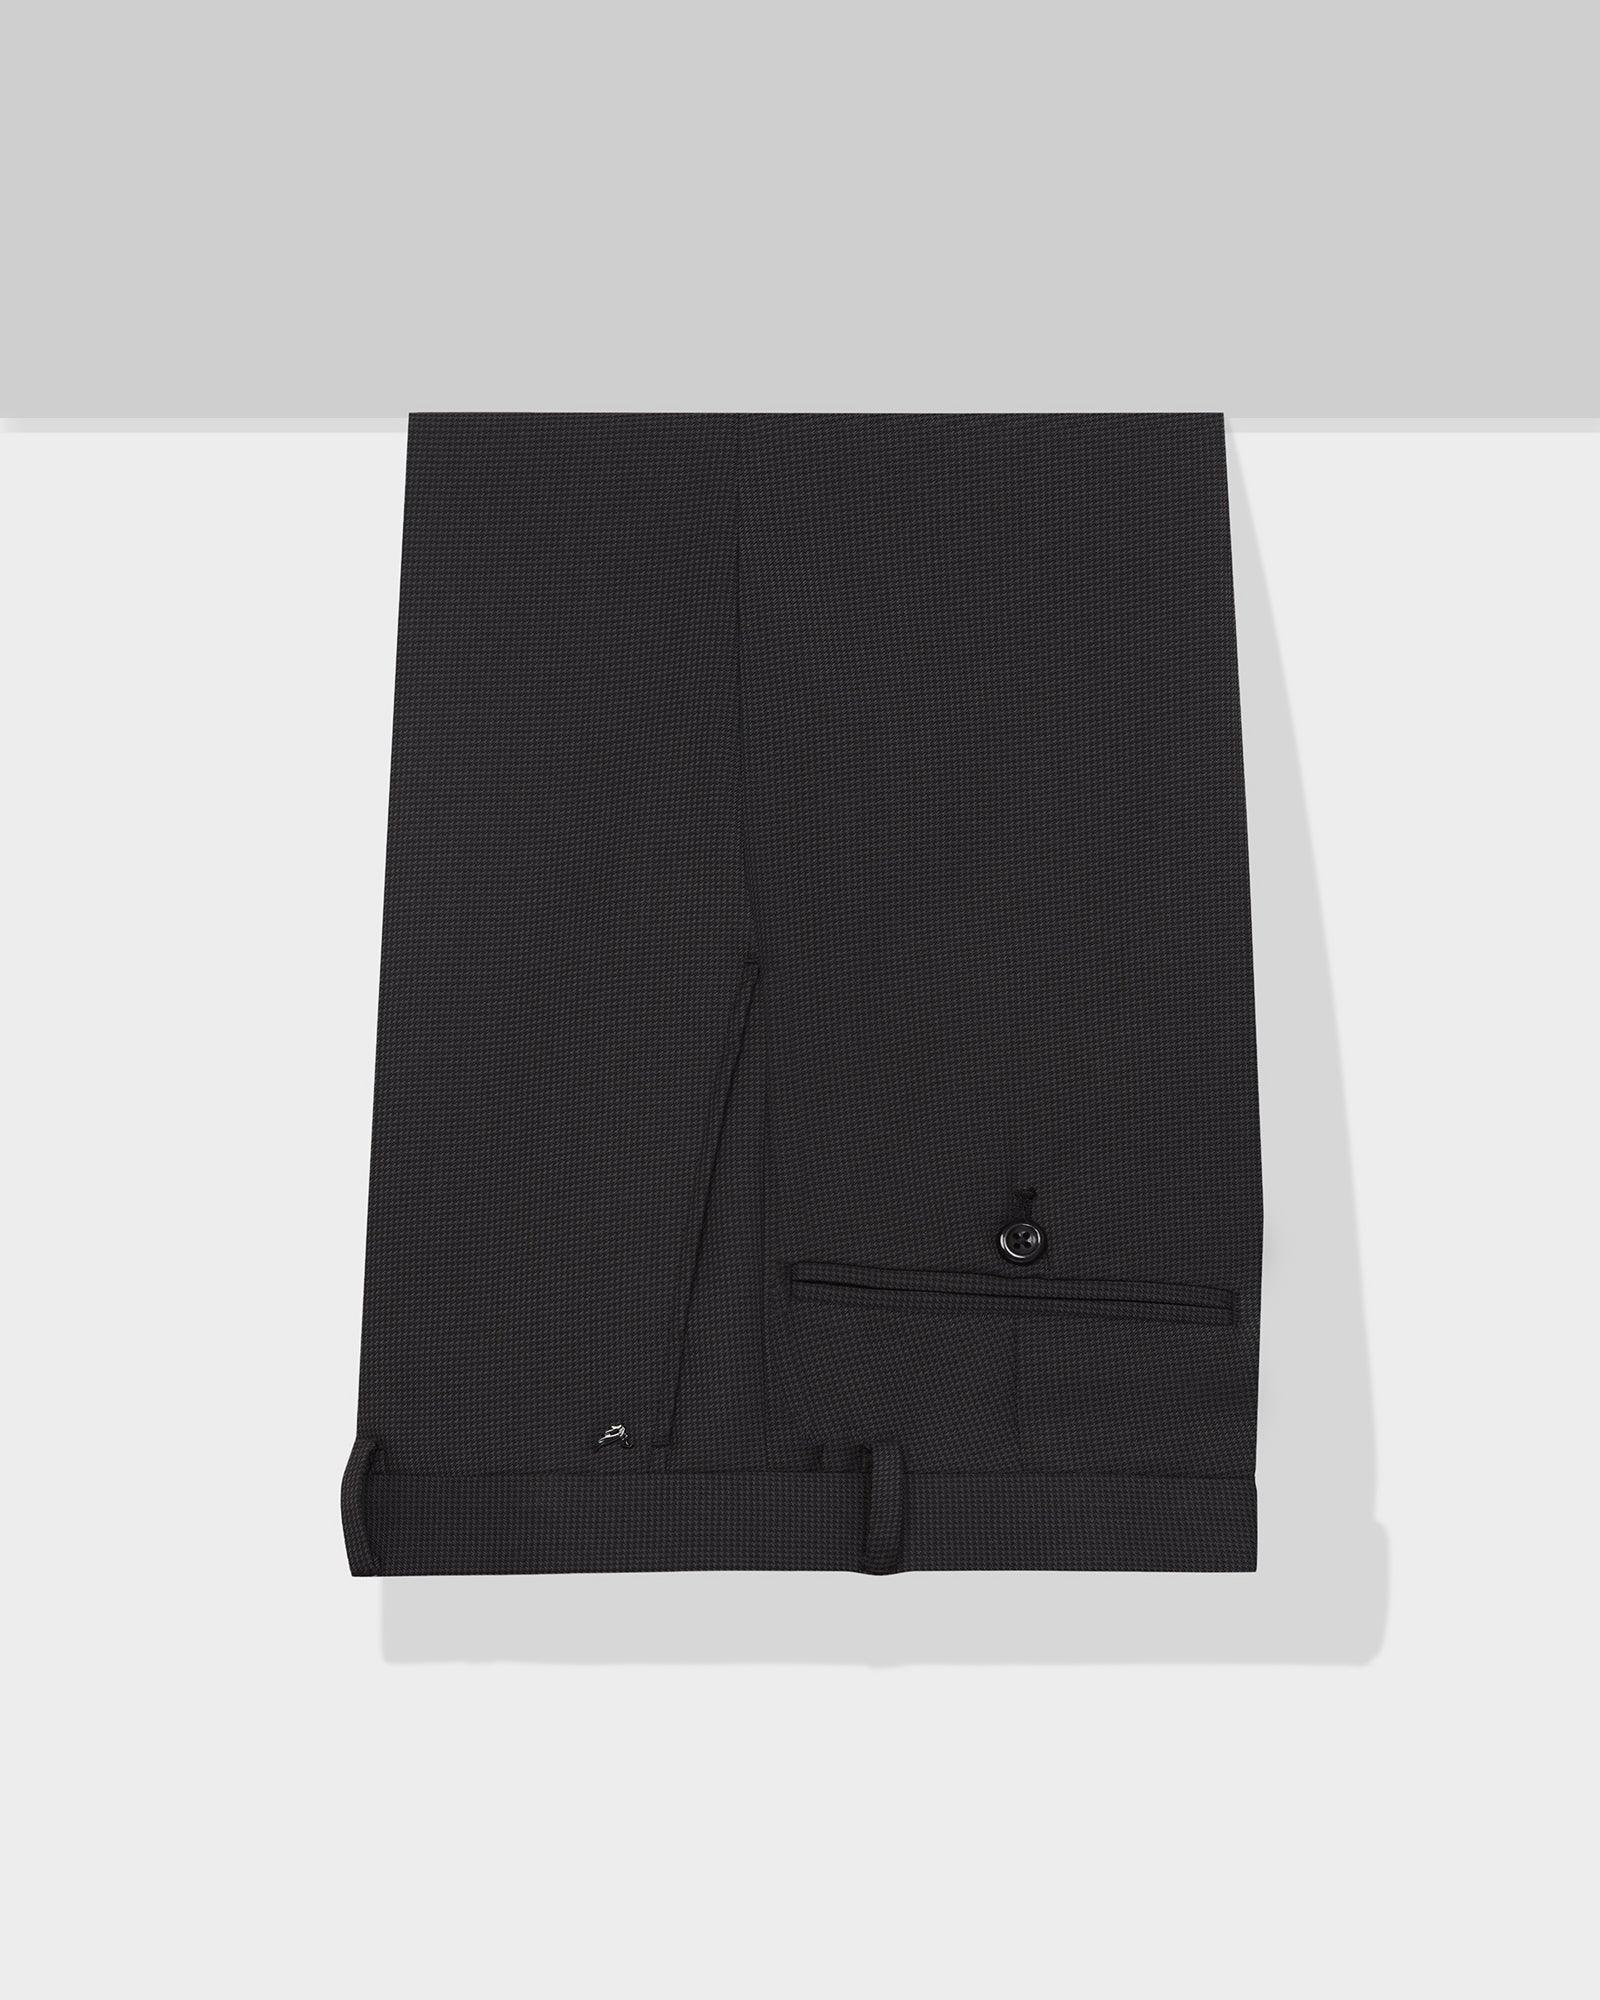 Slim fit B-91 Formal Black Textured Trousers - Texa